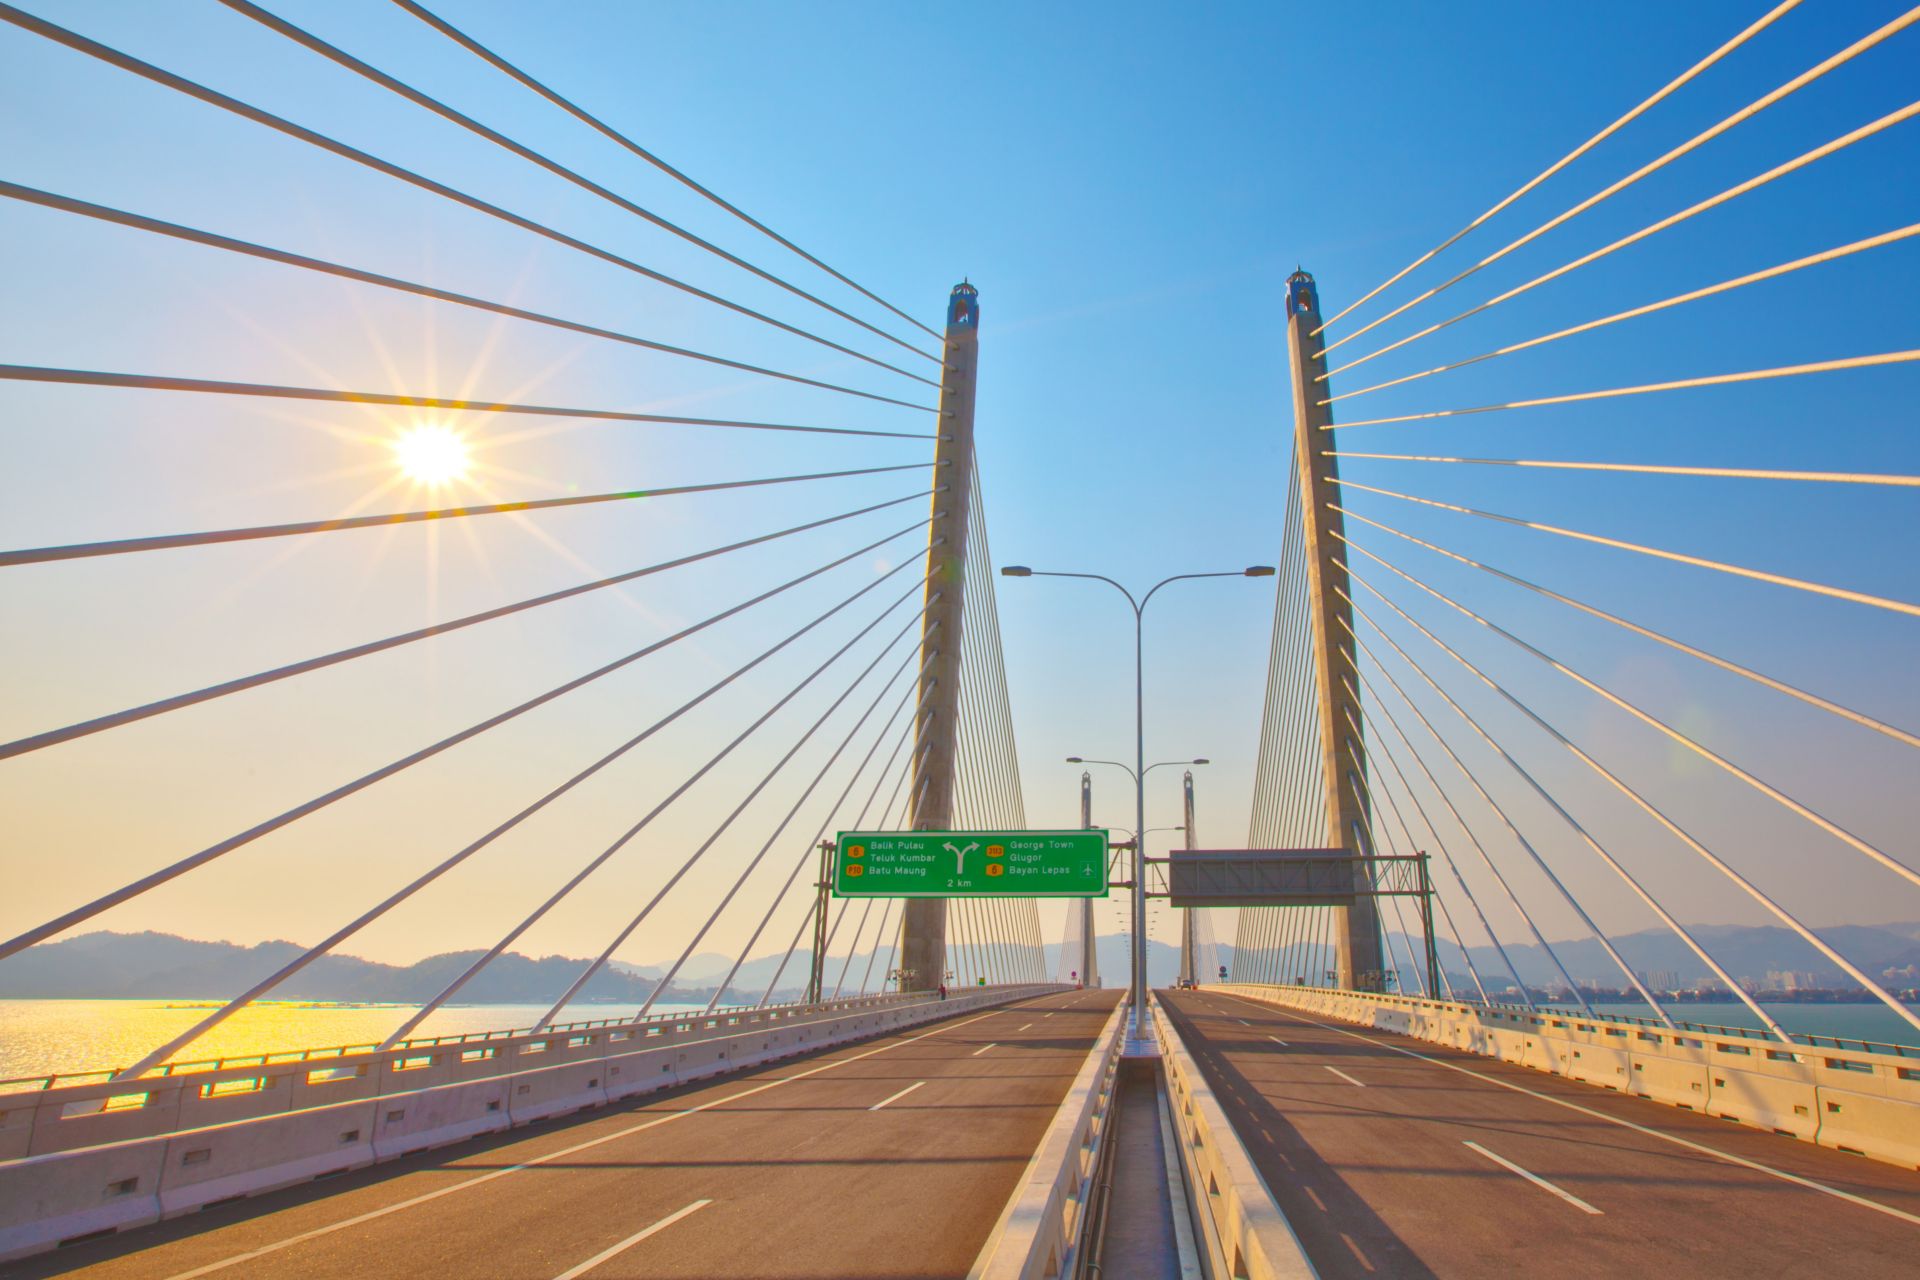 Second Penang Bridge in Malaysia